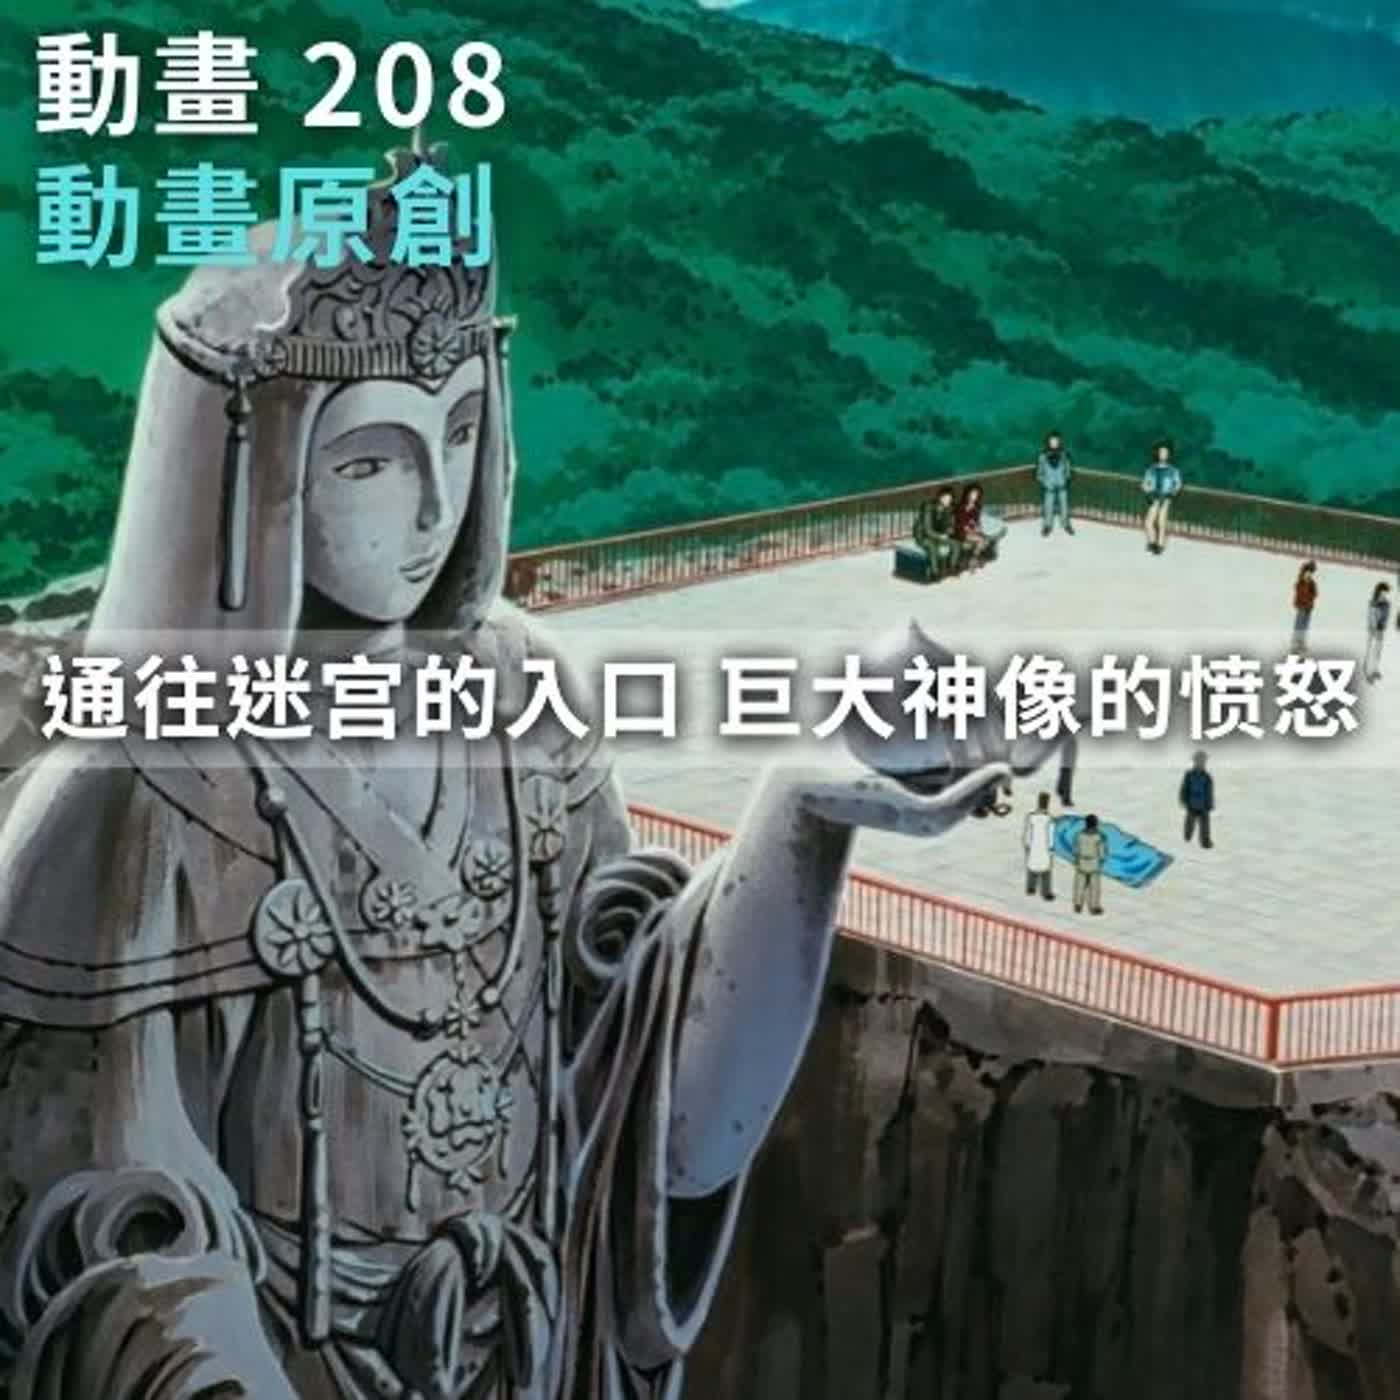 【柯南全集】第208集-通往迷宮的入口 巨大神像的憤怒🔎 不錯的原創故事